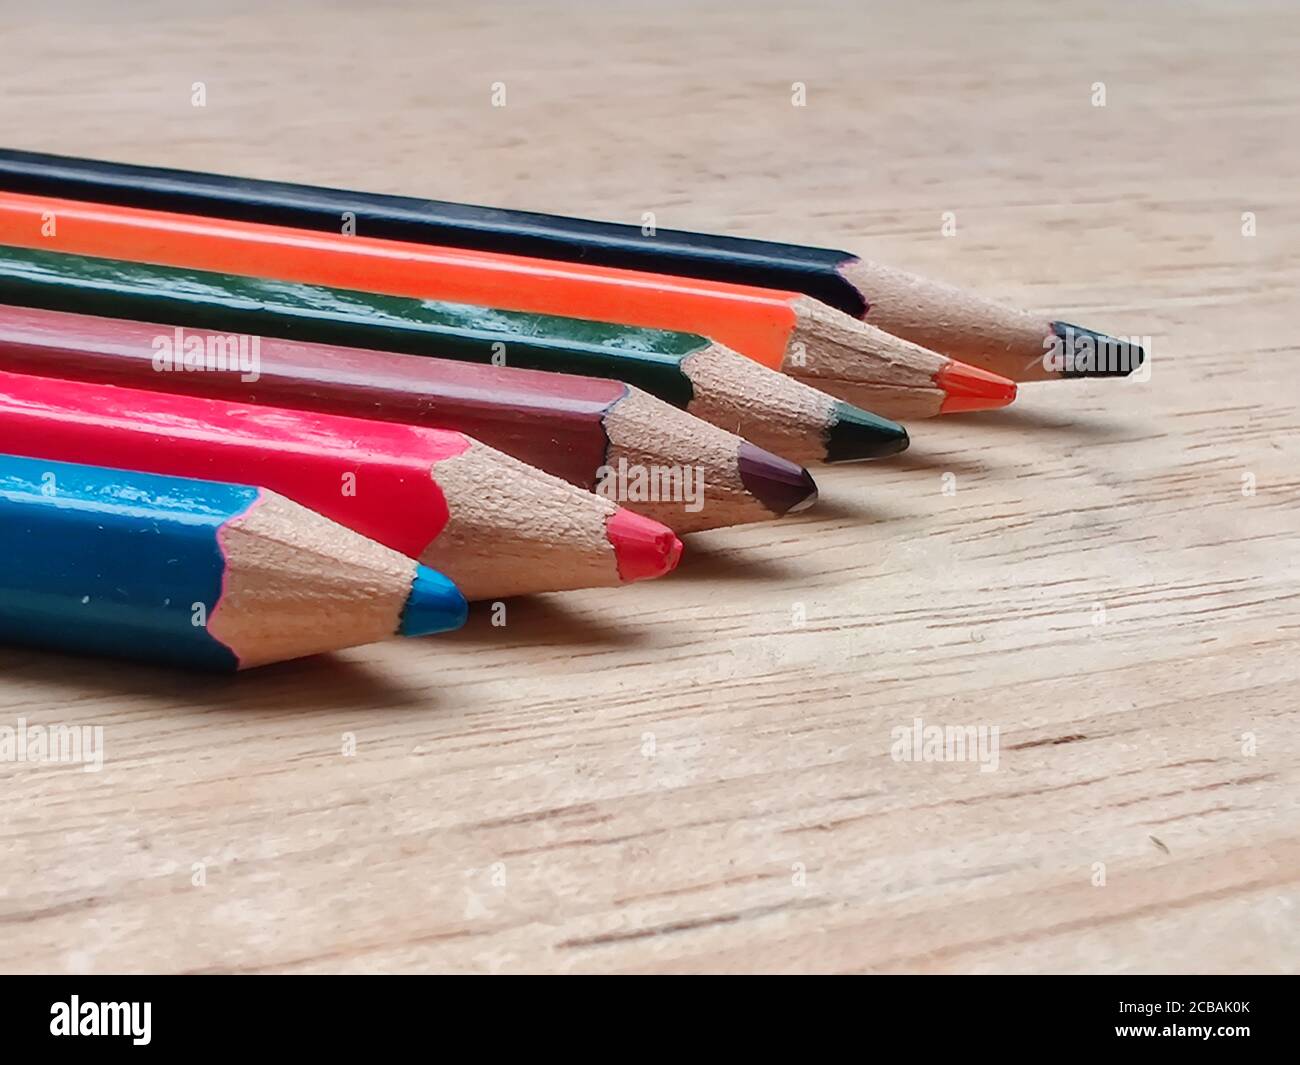 Résumé plat / disposition avec crayons de couleur aiguisés placés sur une planche en bois. Les couleurs bleu, rouge, orange, vert, noir sont visibles ici Banque D'Images